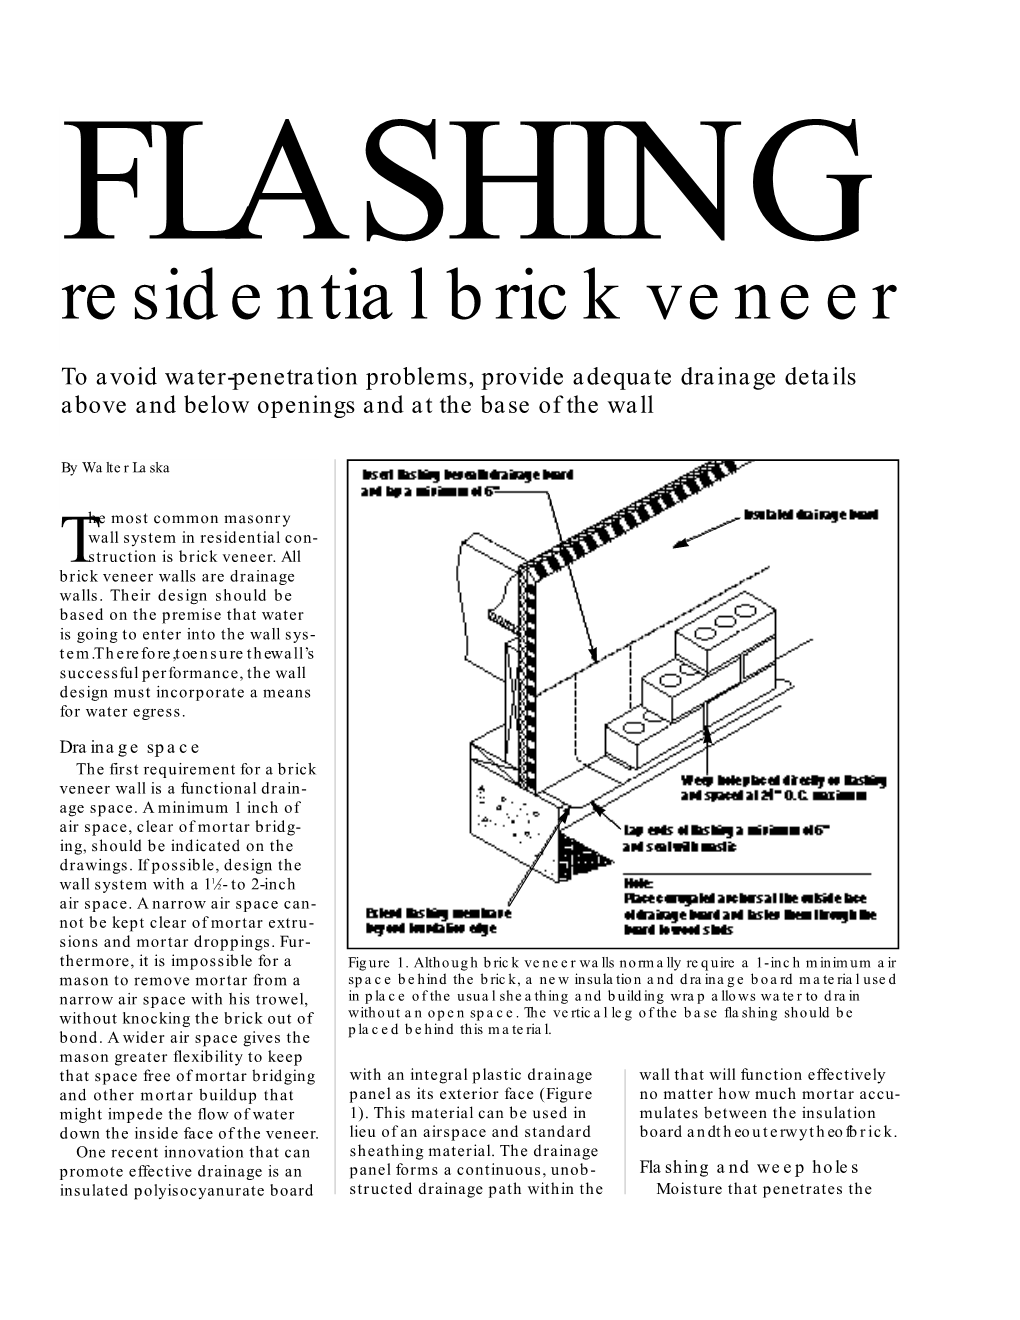 FLASHING Residential Brick Veneer